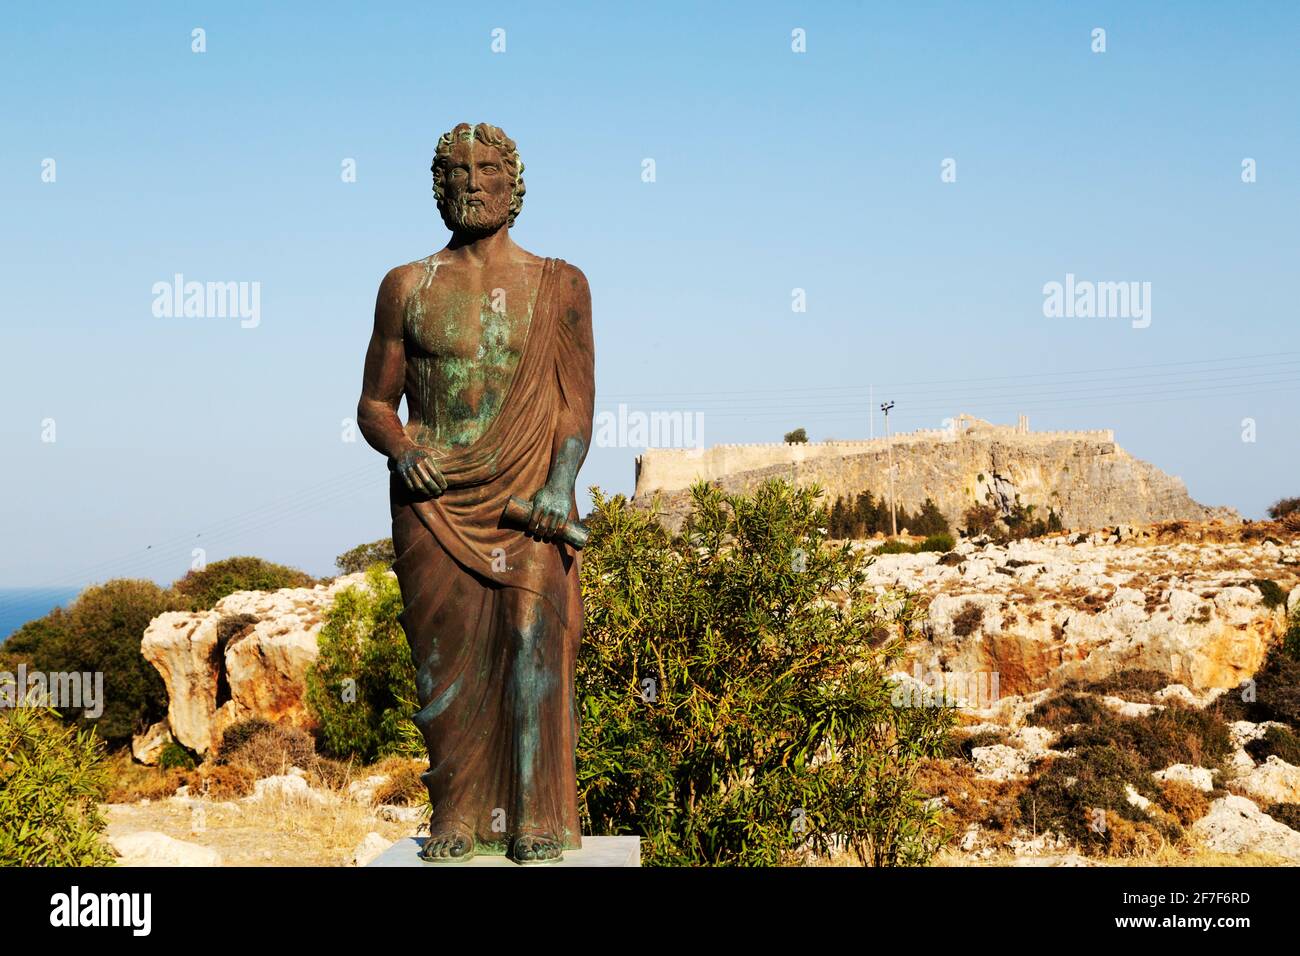 Estatua de Cleobulus, un poeta y filósofo griego antiguo, en Lindos en Rodas, Grecia. Cleobulus es considerado uno de los siete sabios de la antigua Greec Foto de stock